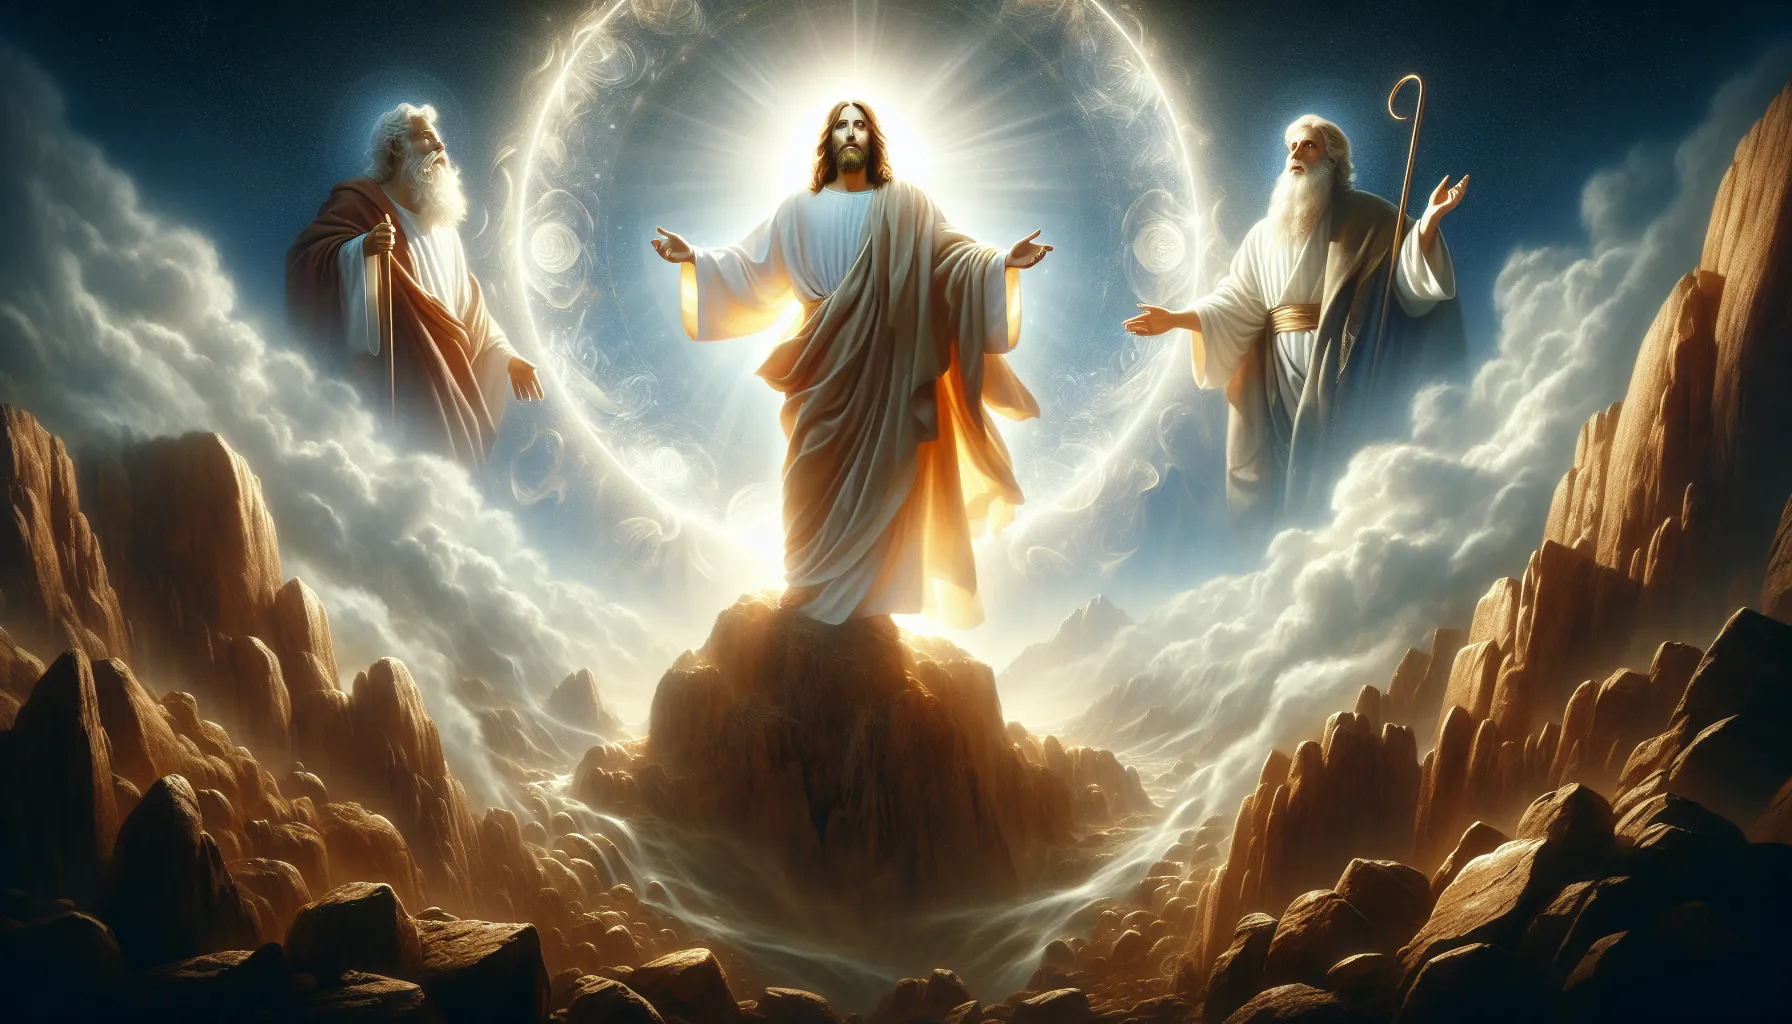 Representación artística de la transfiguración de Jesús en el monte Tabor